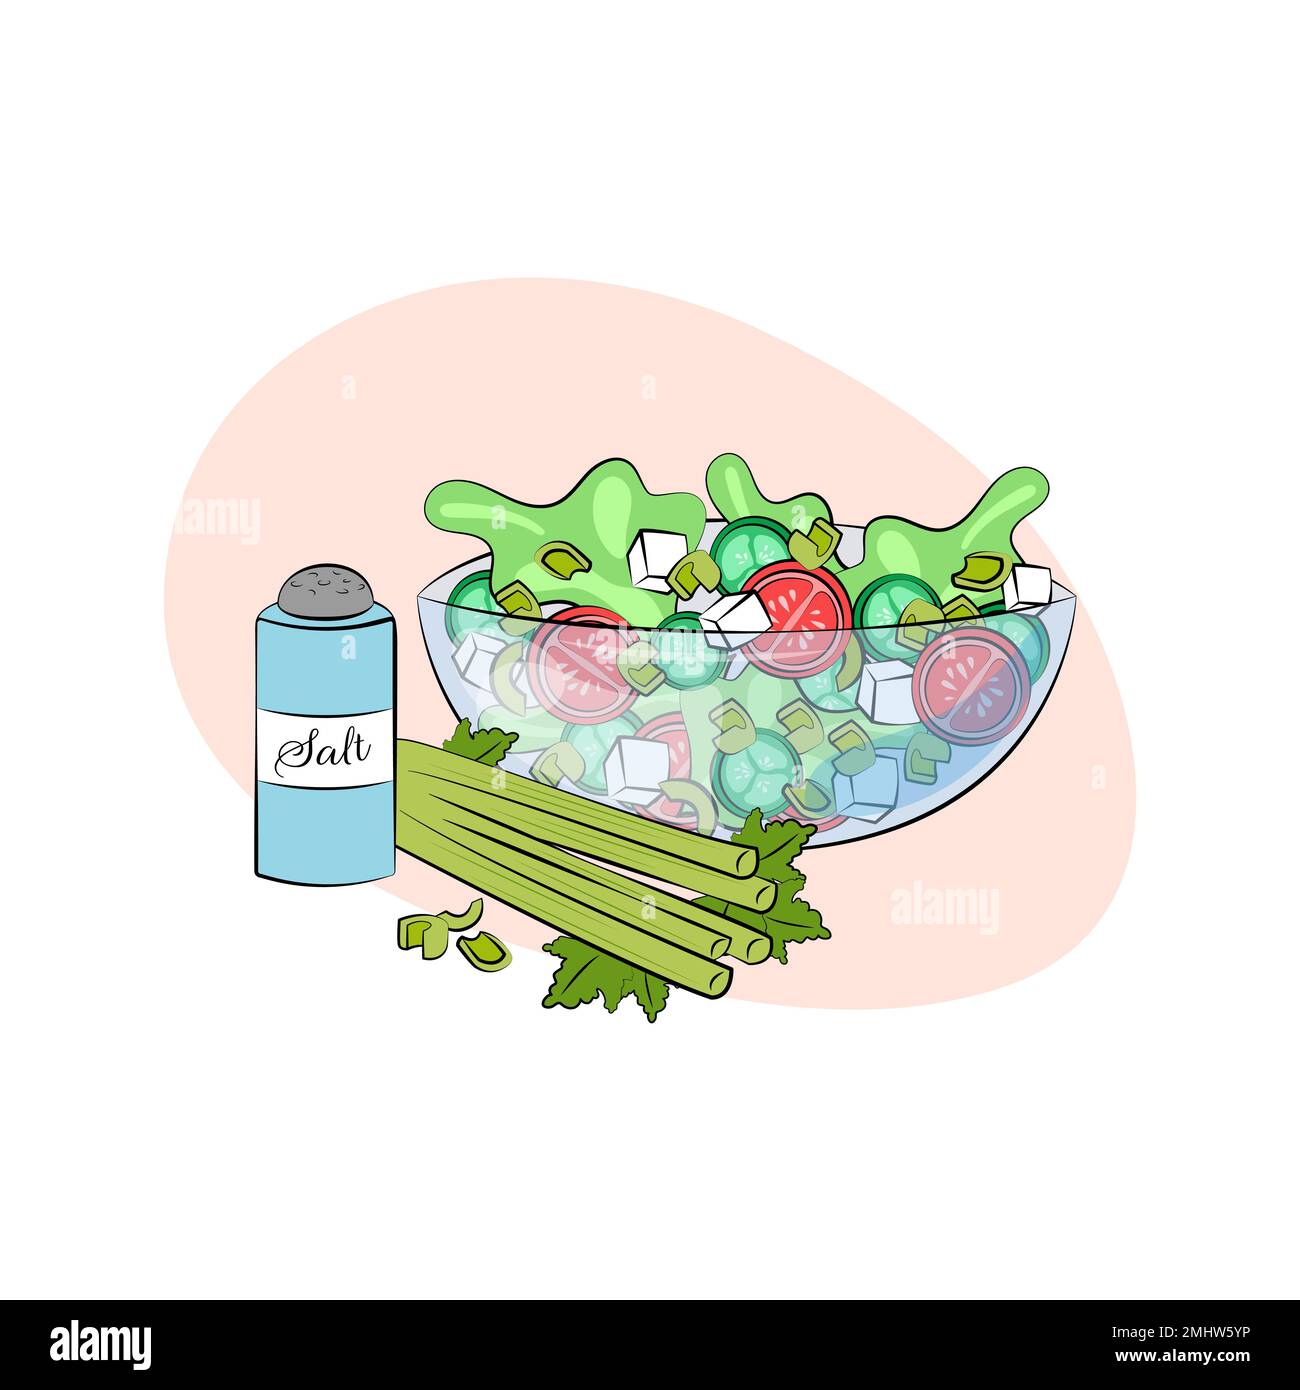 Selleriesalat. Vegetarisches Gericht. Vektordarstellung einer Schüssel mit Gemüse. Sellerie und Stiele, Salat, Tomaten, Gurken, Feta. Gesunder Spinner Stock Vektor